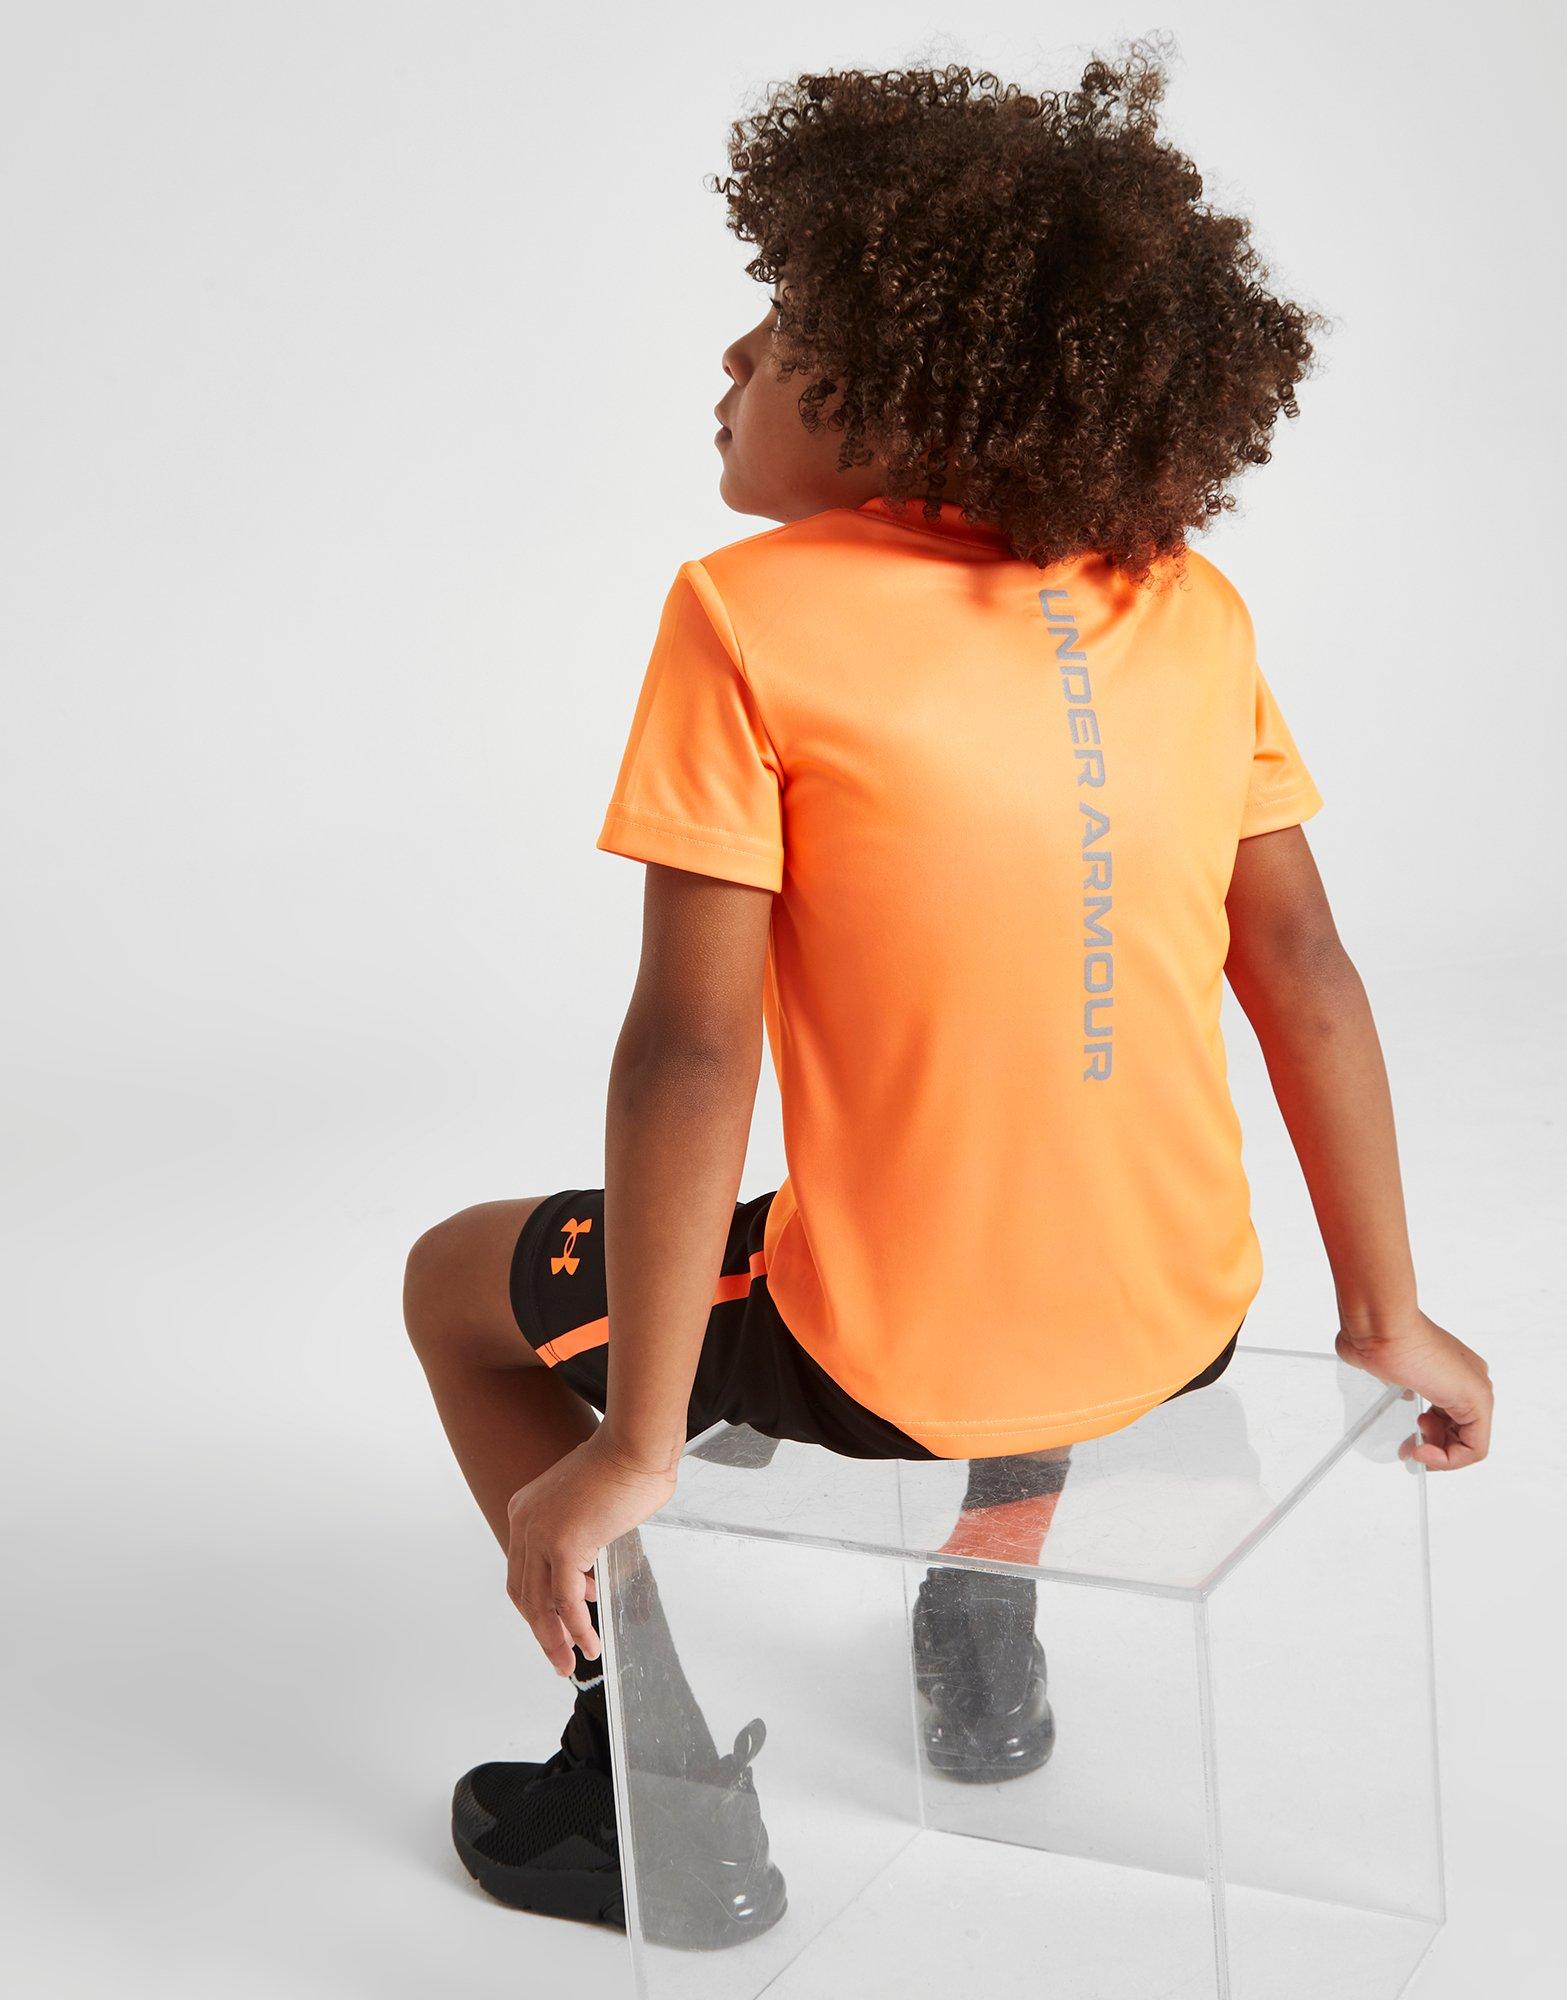 Mitchell & Ness World B. Free Orange Jersey Size Small | Cavaliers